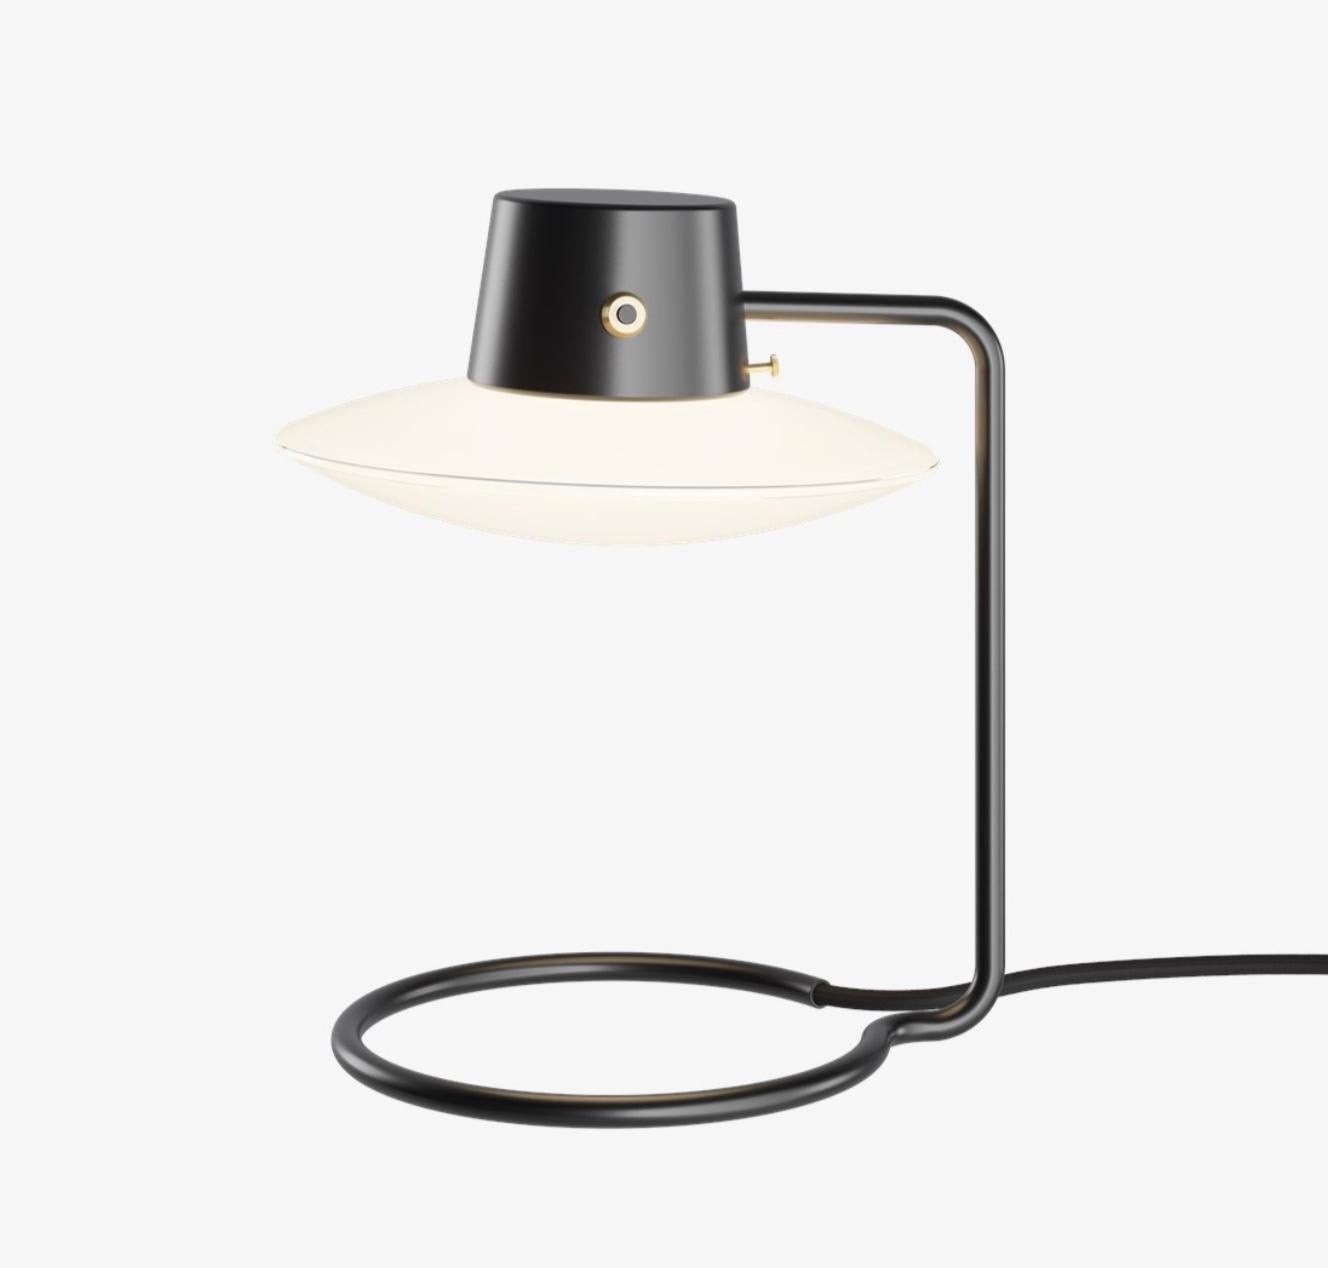 Lampe de table Arne Jacobsen AJ Oxford 280mm en noir et opaline pour Louis Poulsen. Conçue en 1963, production actuelle.

La lampe à poser AJ Oxford présente une expression graphique épurée, qui reflète l'architecture du St Catherine's College, à